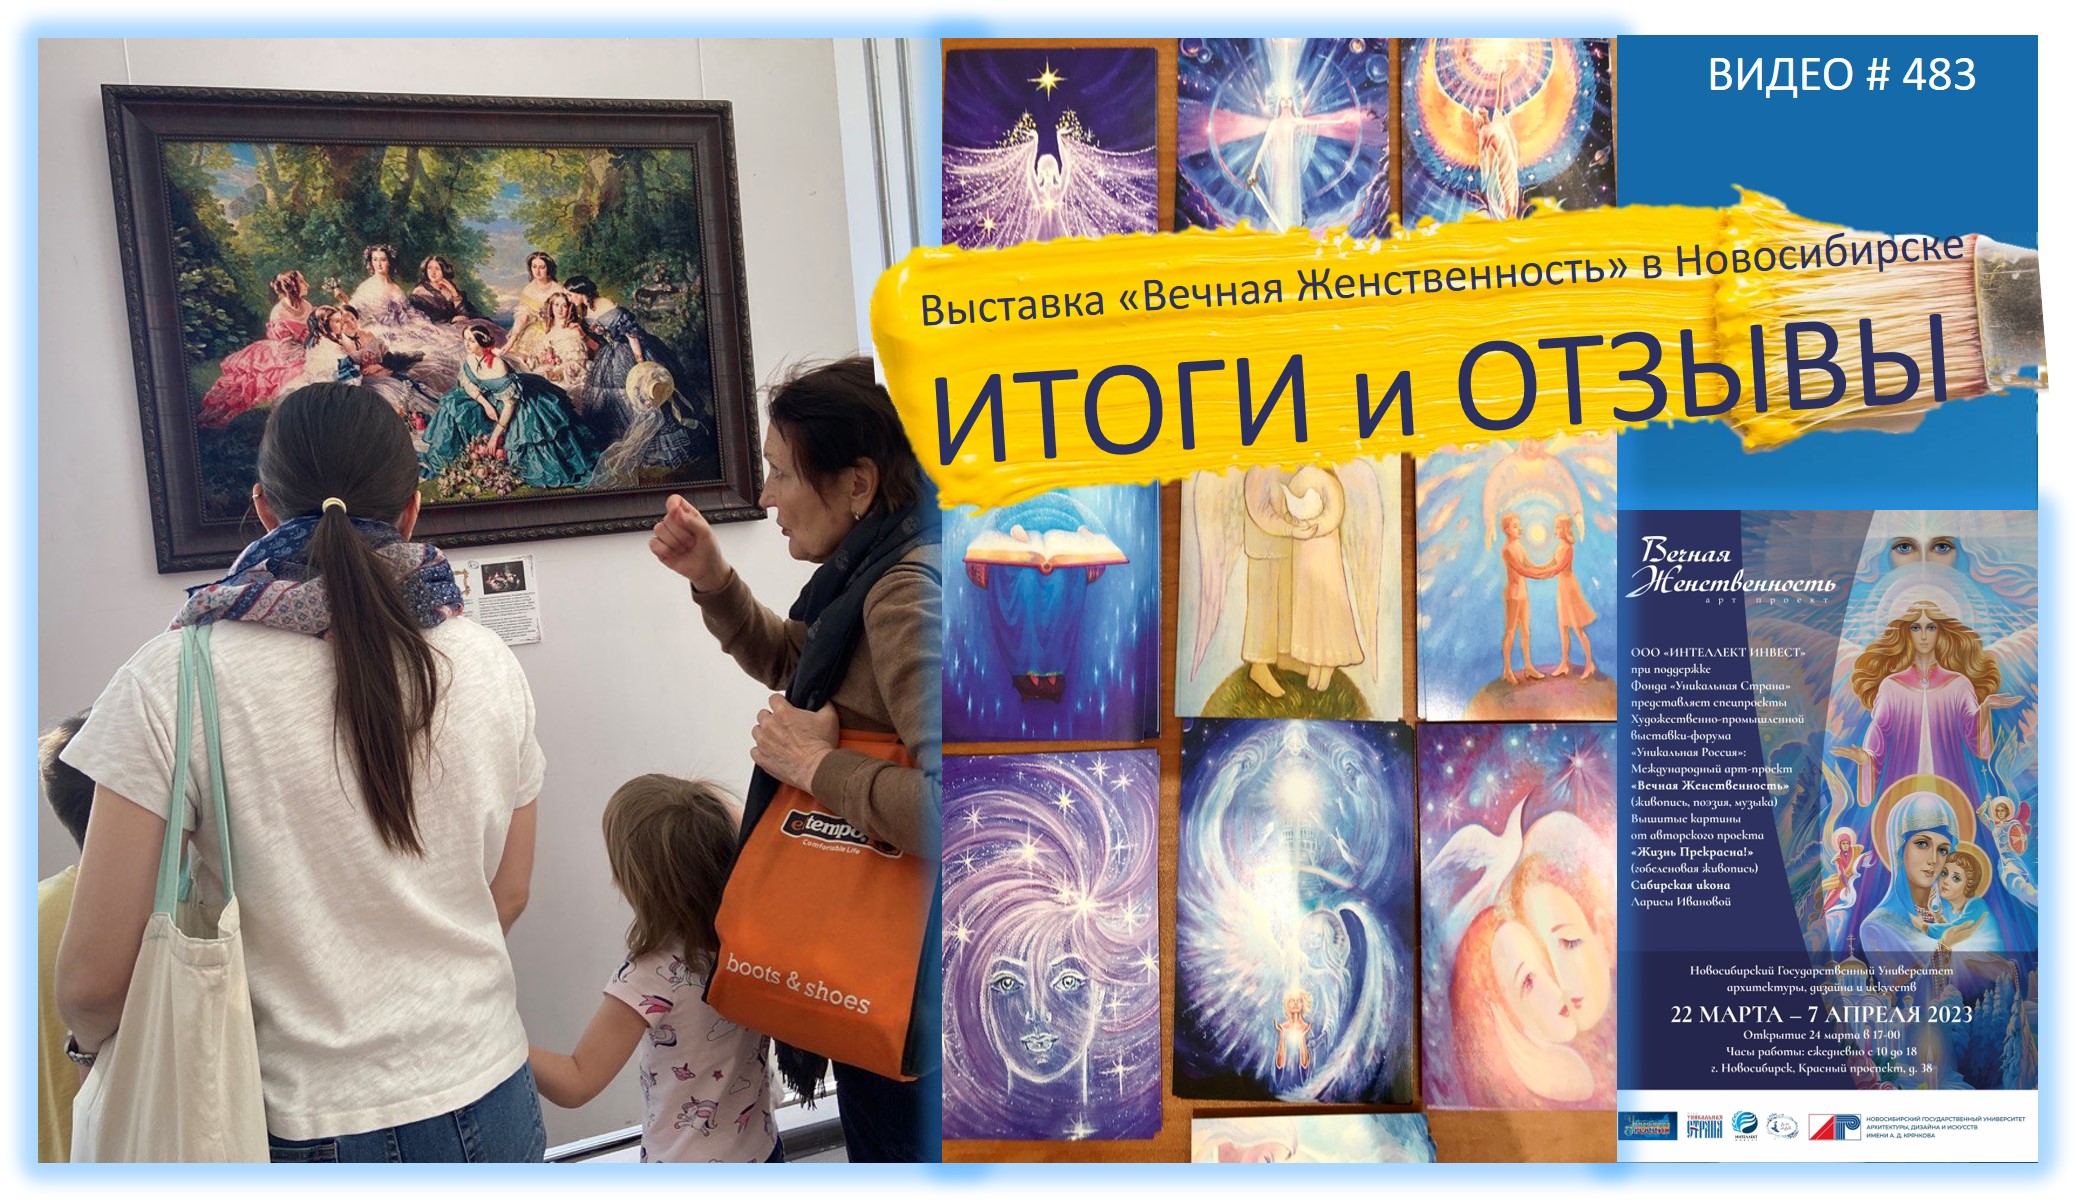 #483 Выставка «ВЕЧНАЯ ЖЕНСТВЕННОСТЬ» в Новосибирске - ИТОГИ и ОТЗЫВЫ?